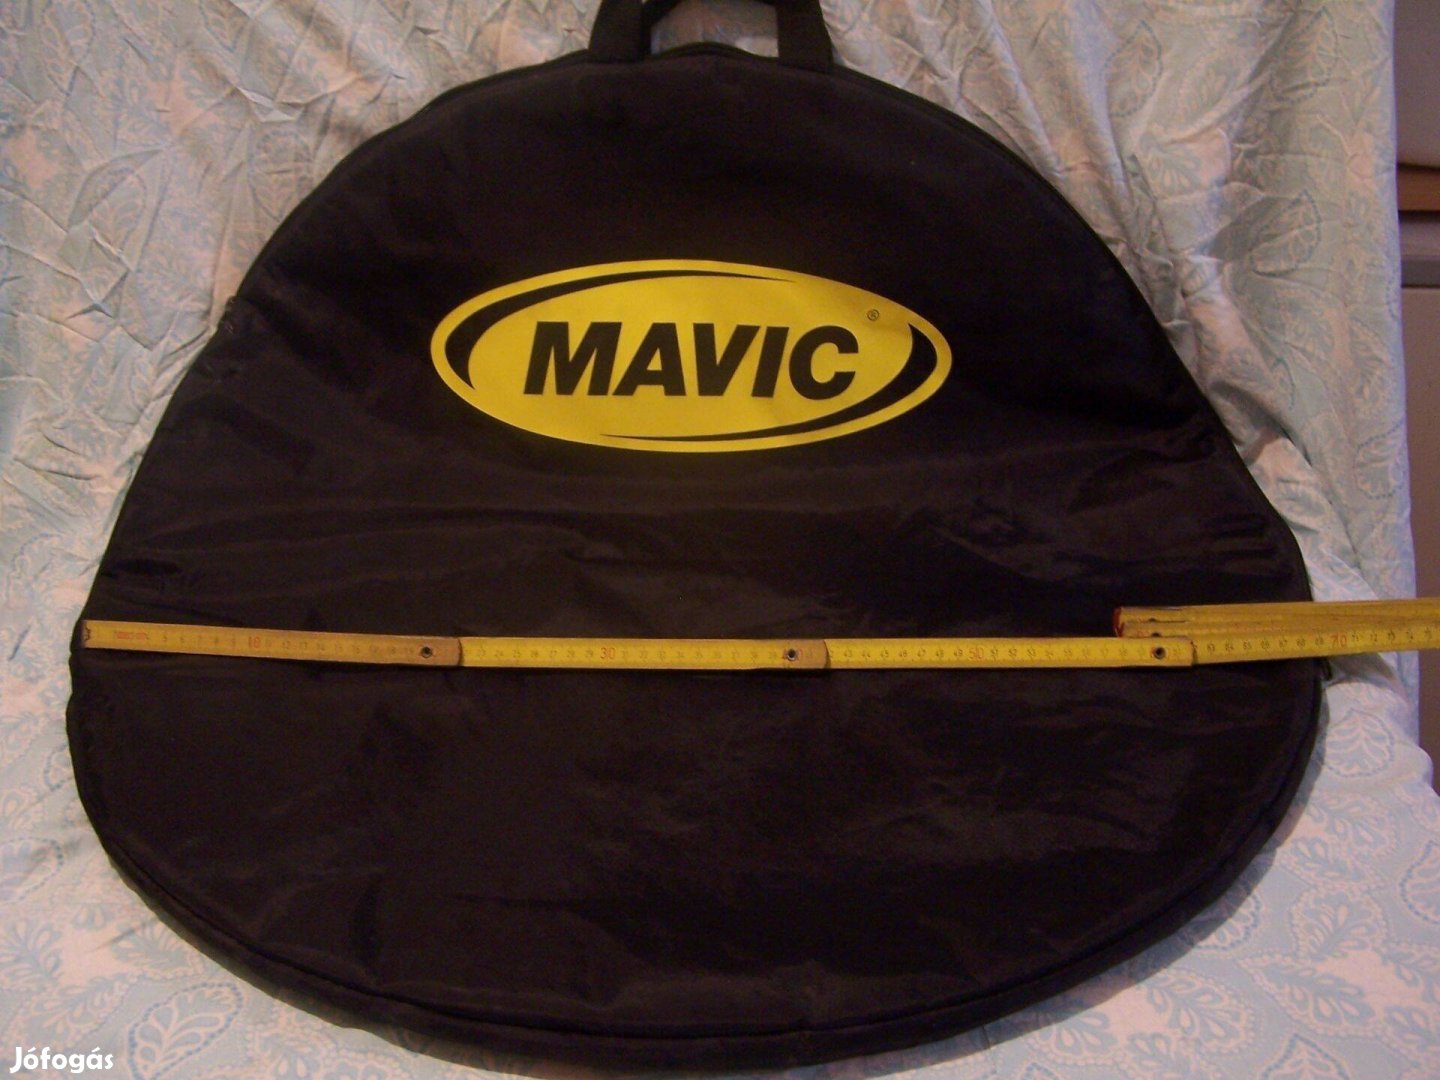 Mavic Road kerék szállító táska, országúti kerekekhez, 2 db. 18000 Ft